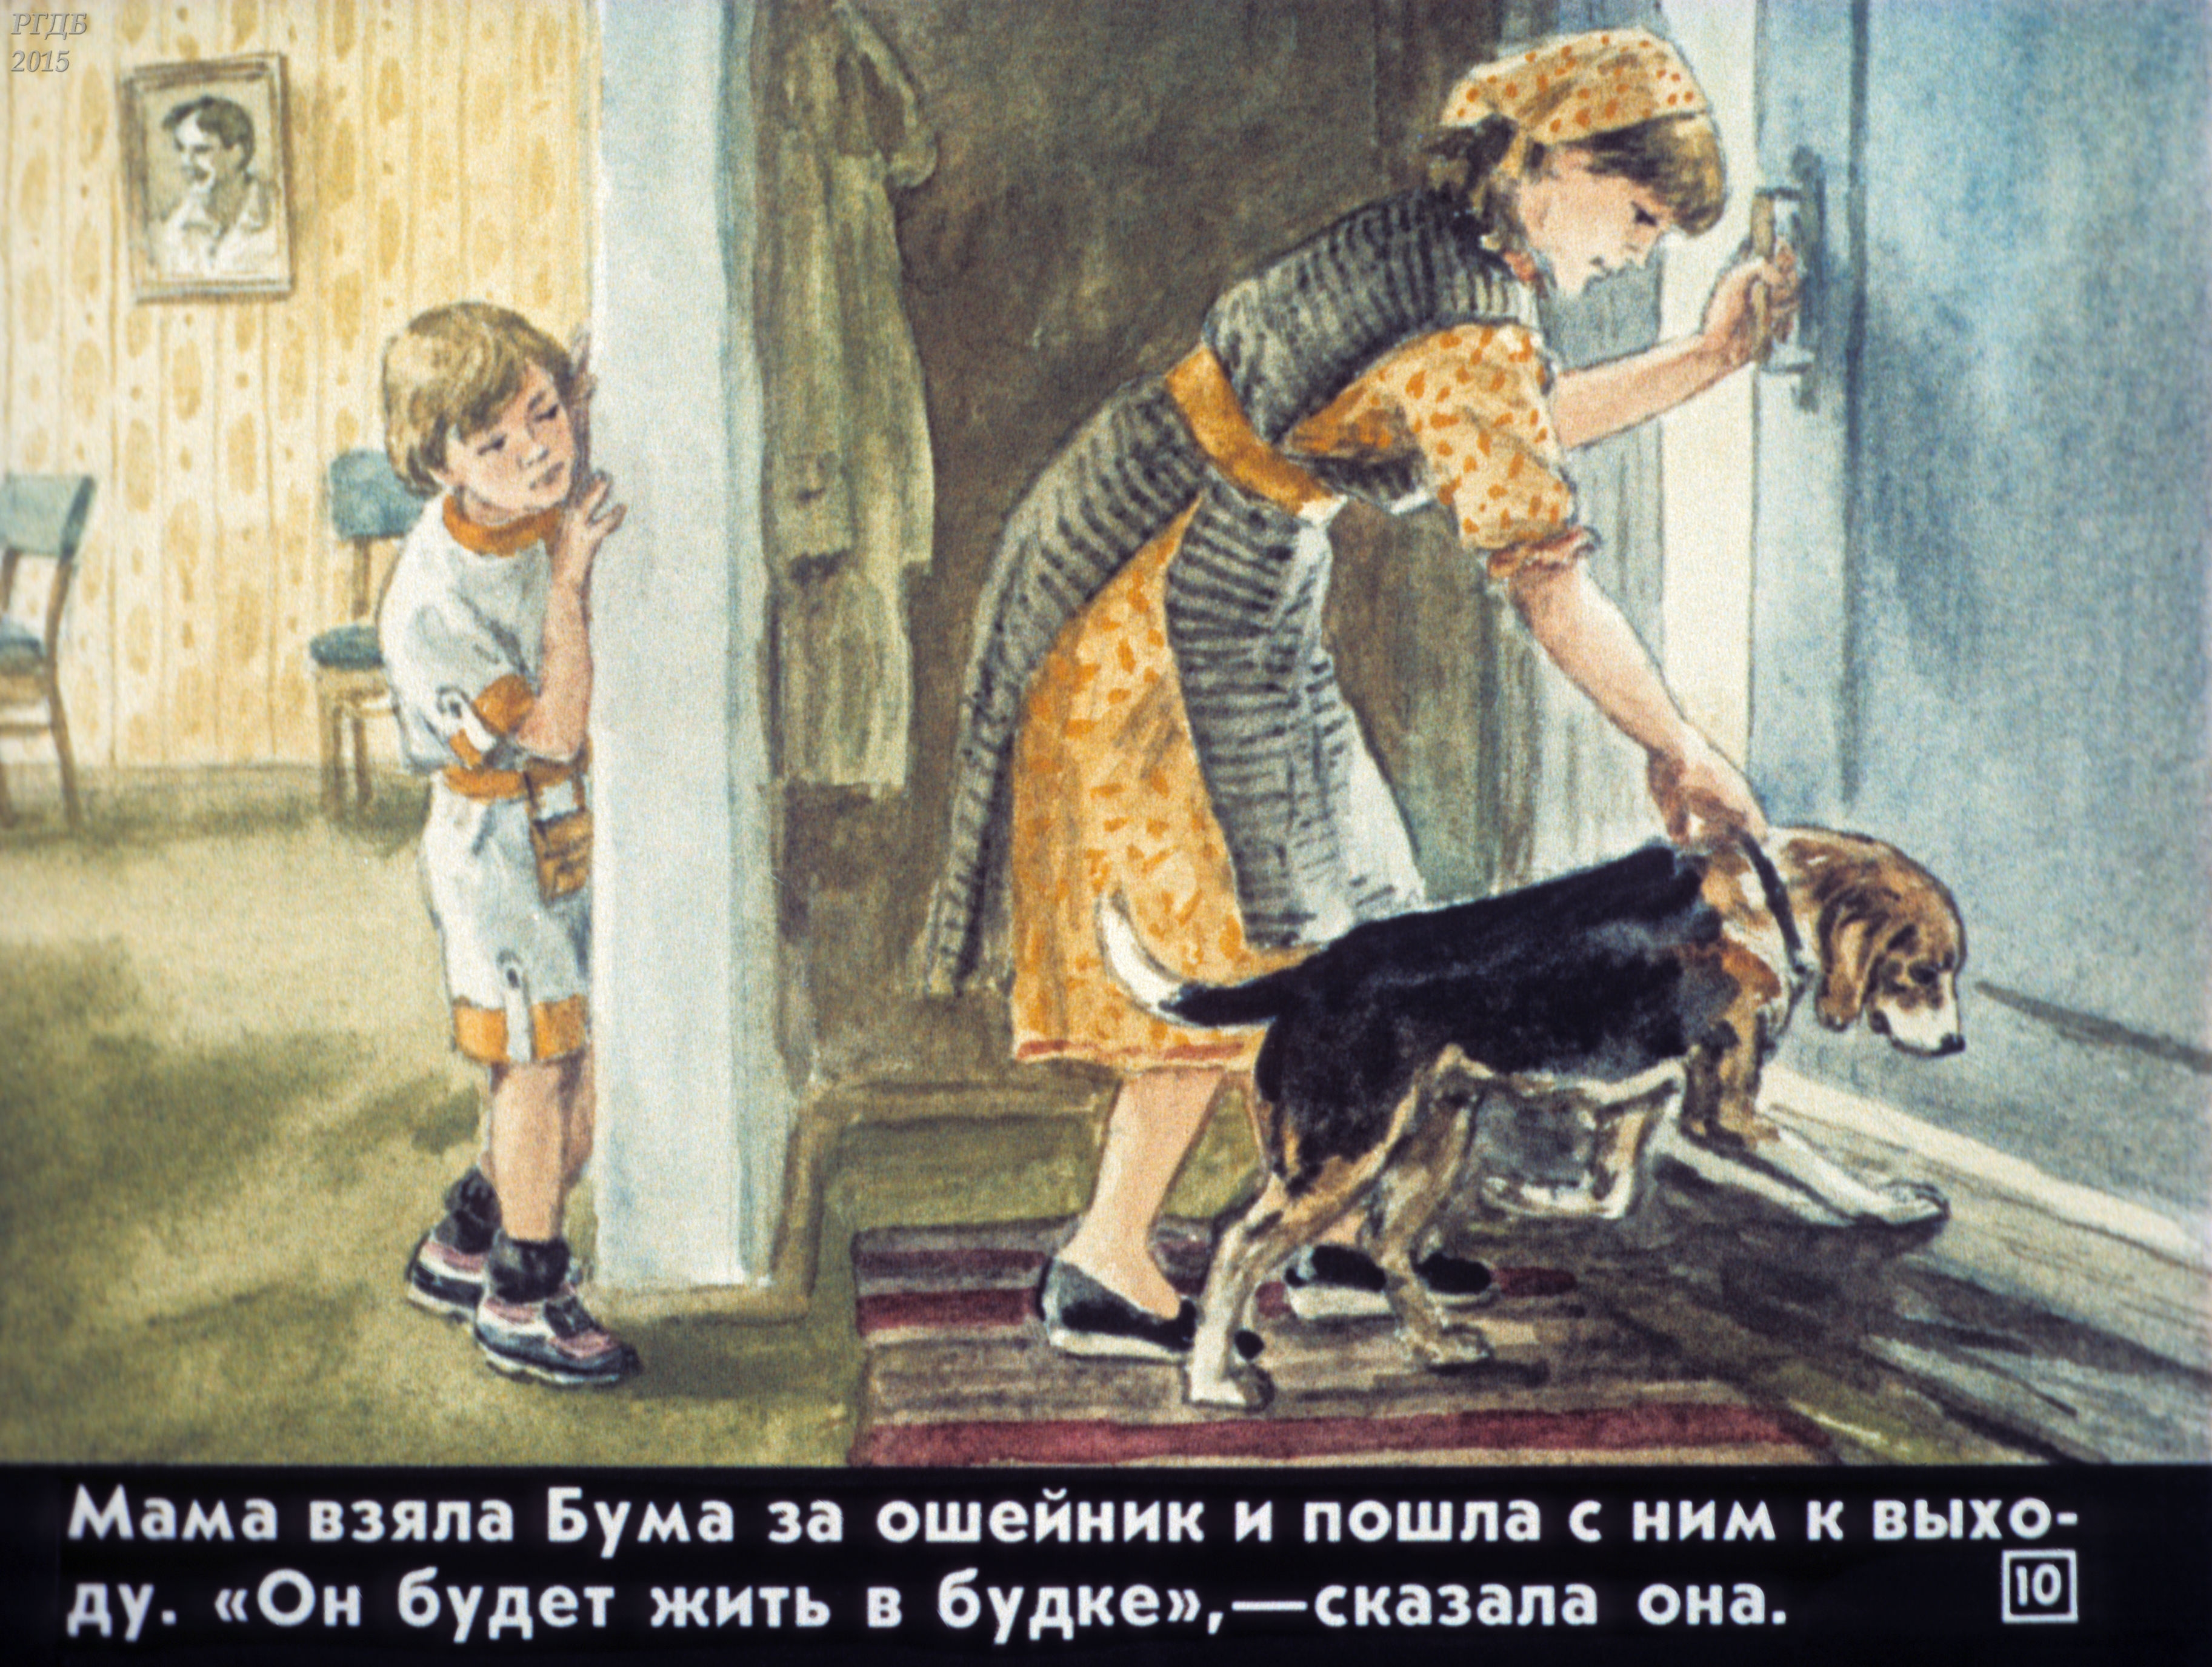 Мама и собака рассказ. Иллюстрации к произведениям. Осеева почему. Рассказ почему Осеева. Иллюстрации к рассказу Осеевой почему.